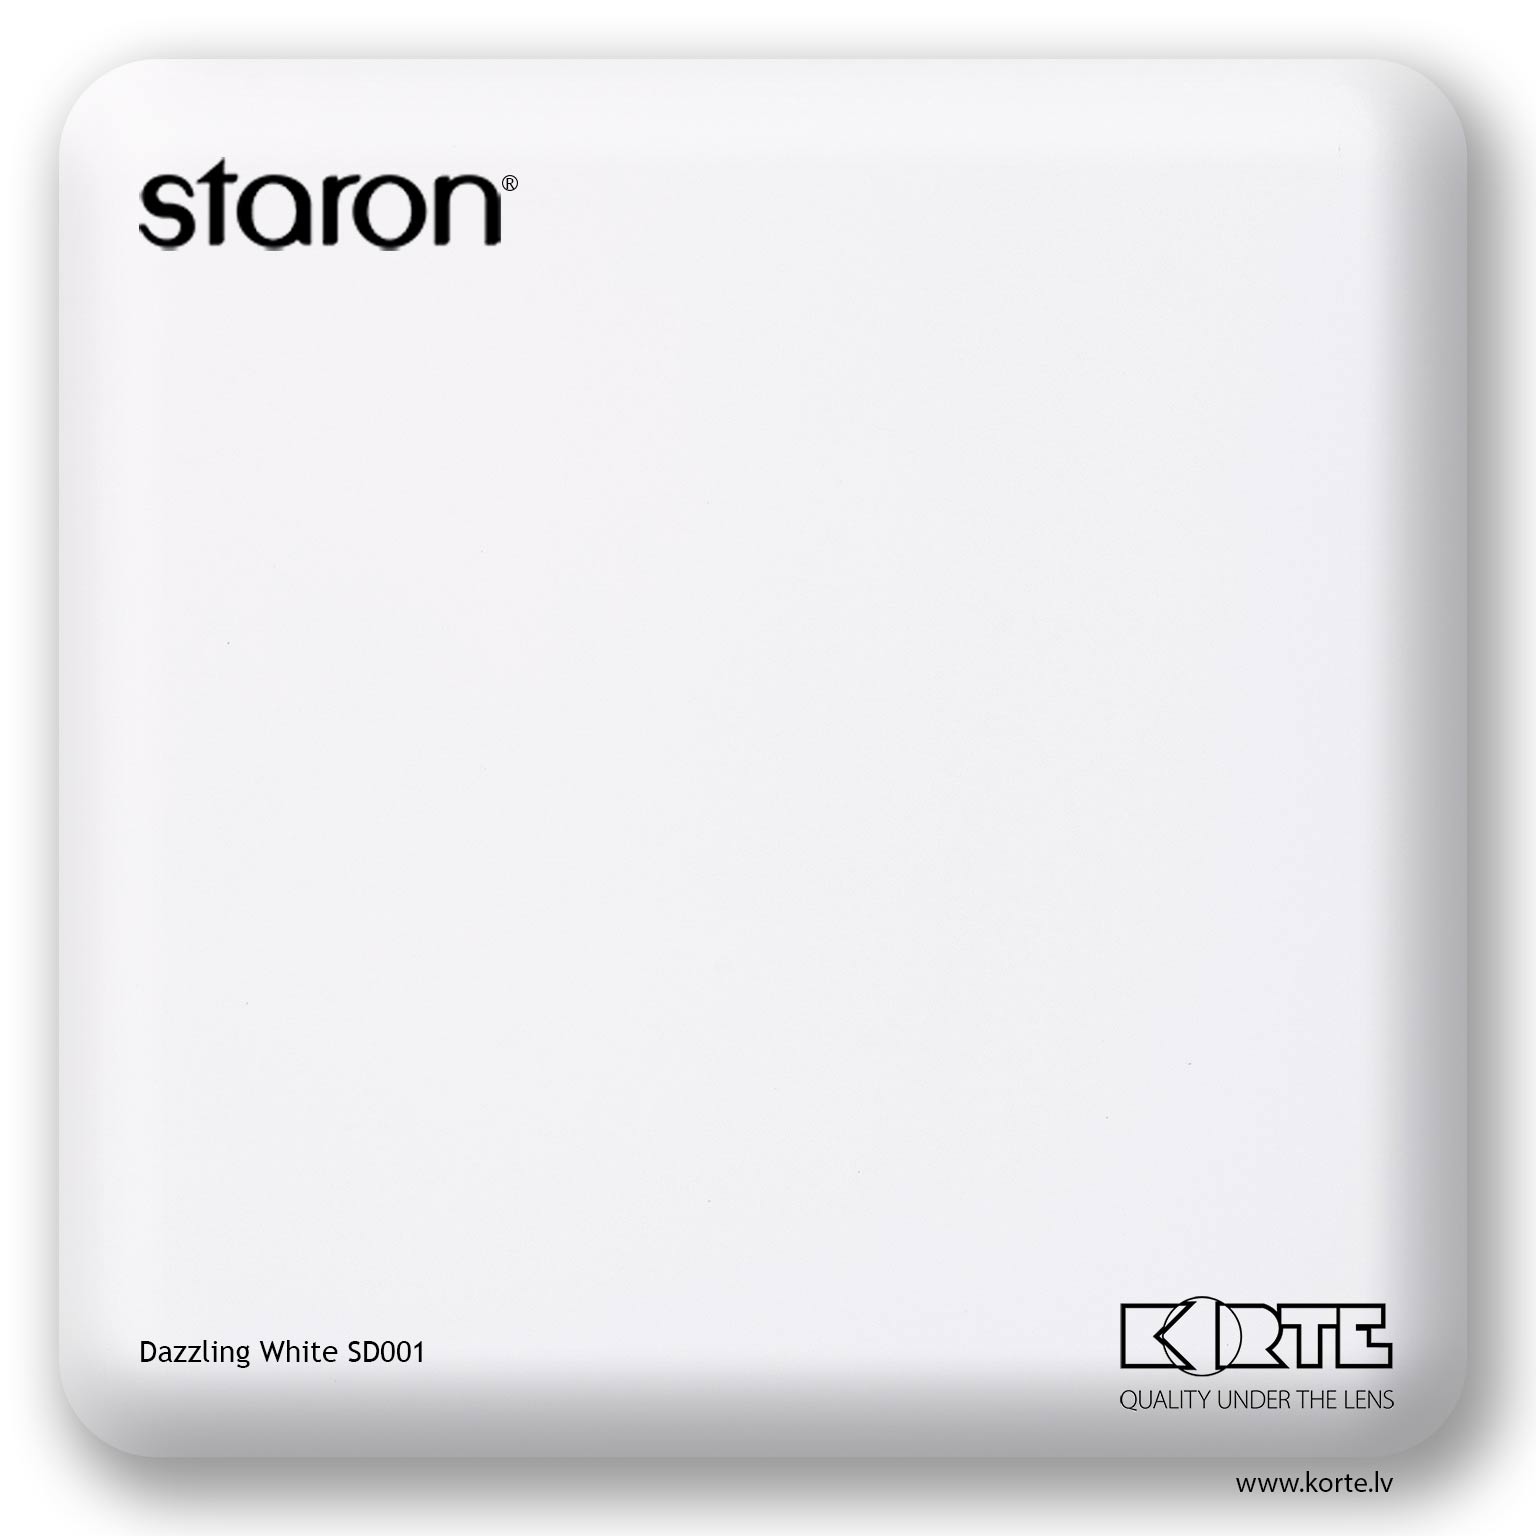 Staron Dazzling White SD001